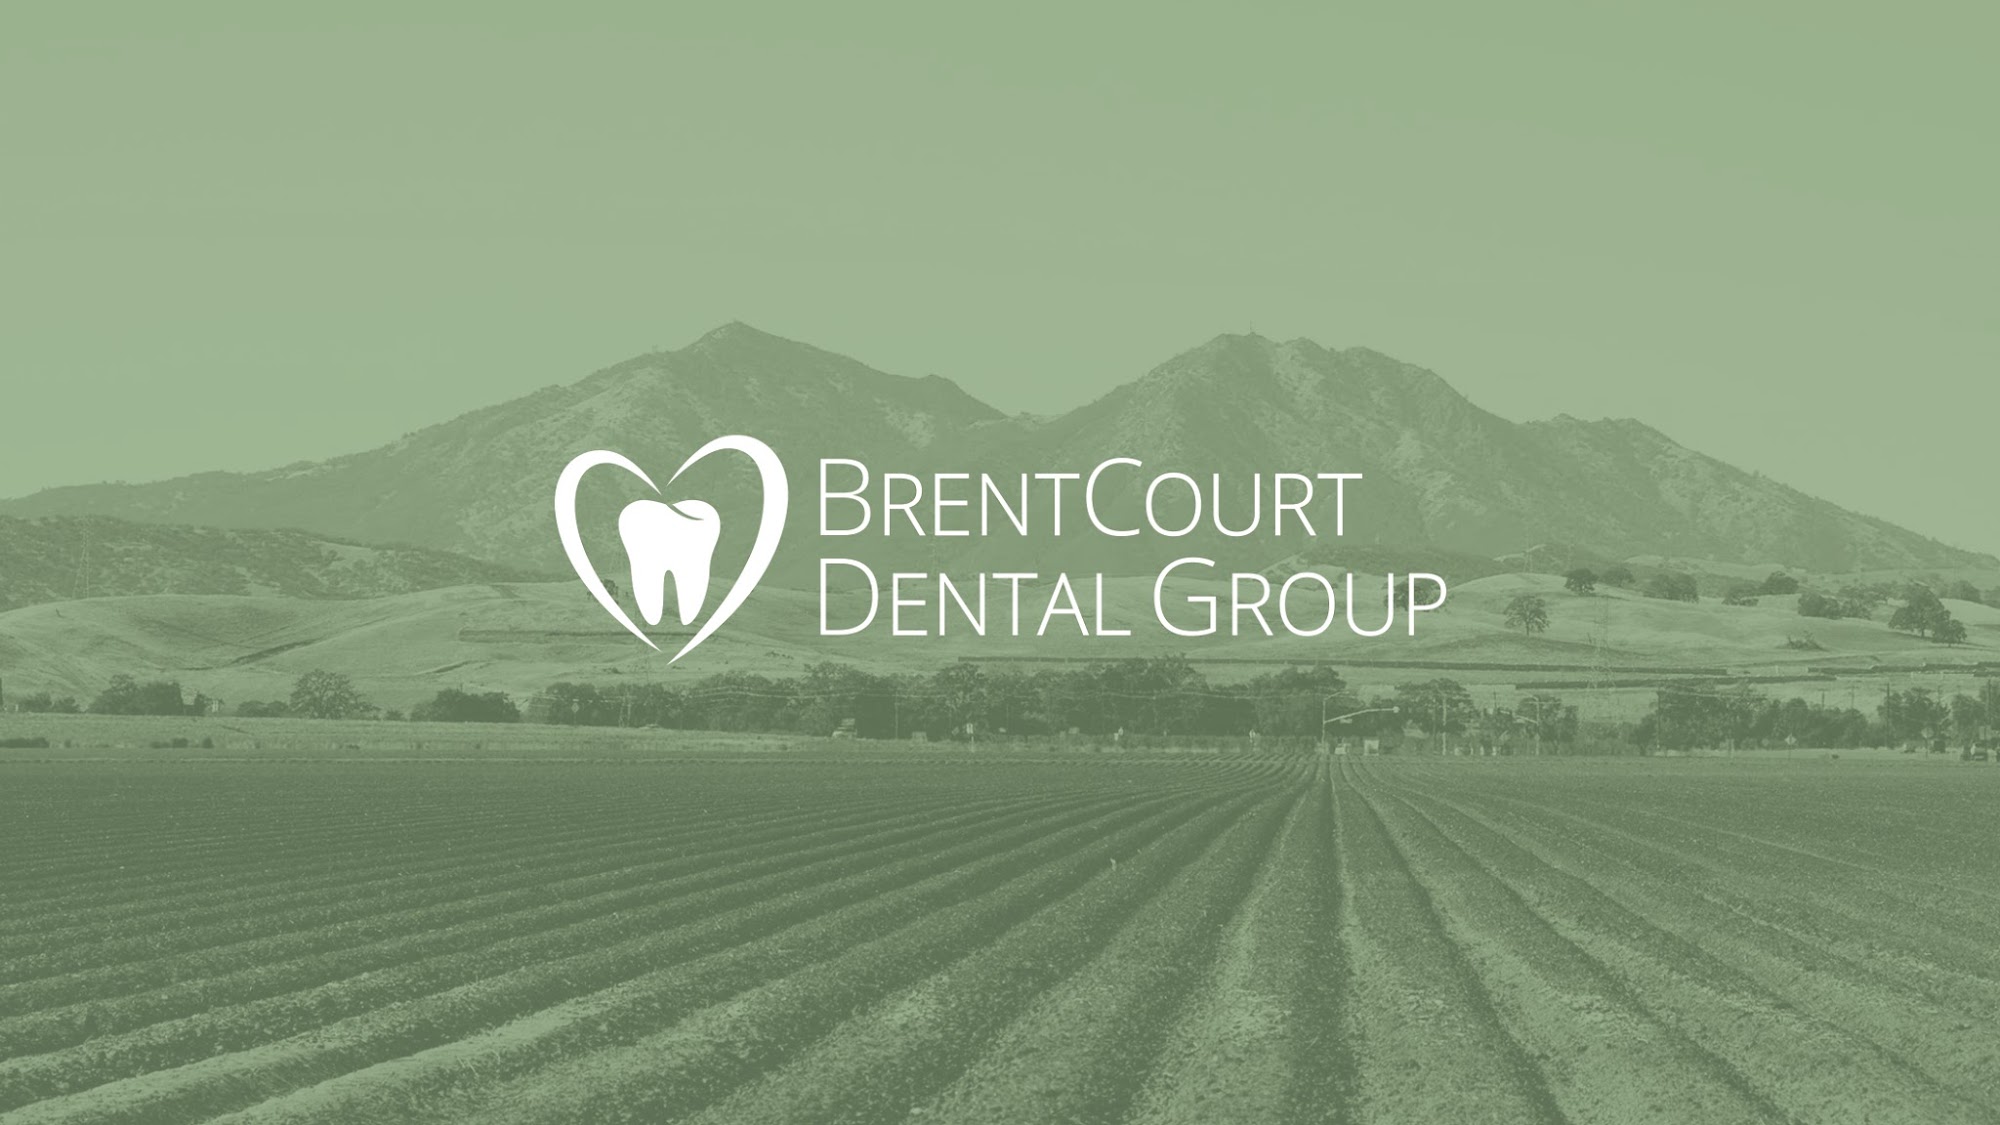 BrentCourt Dental Group